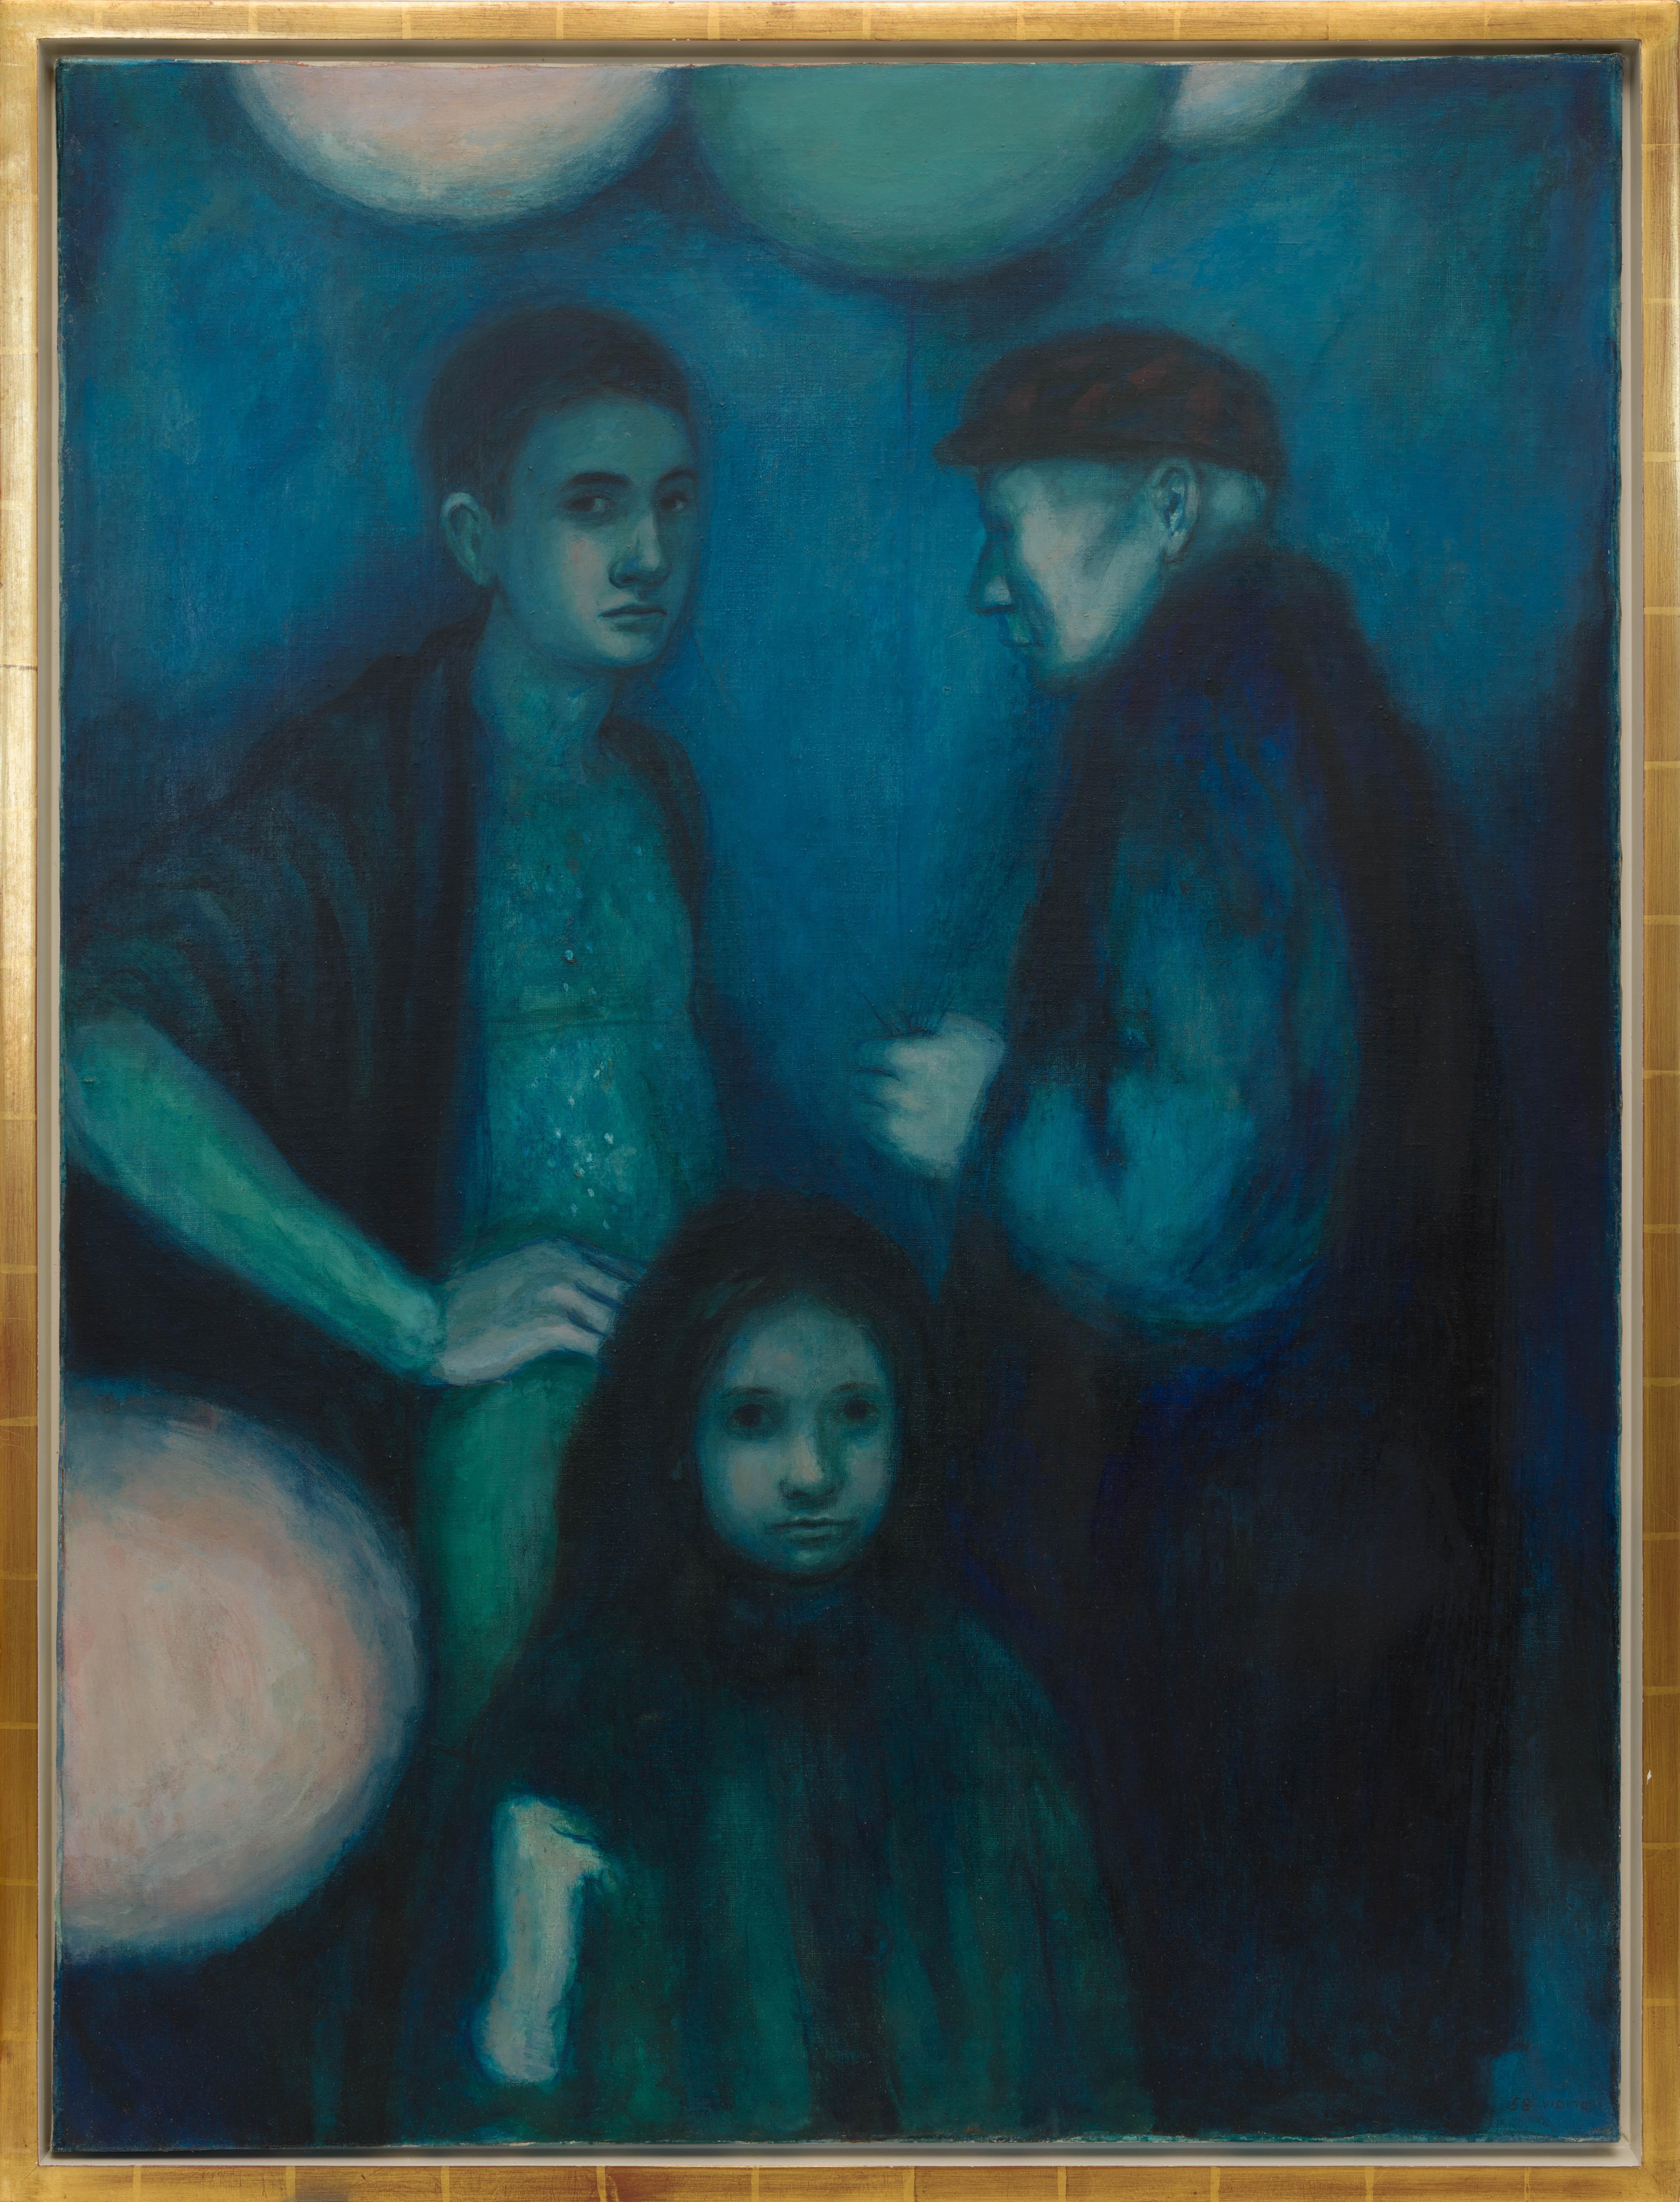 Balloon Man est réalisé dans la tradition d'un Picasso "période bleue", qui a eu une influence sur le travail de Vidito dans les années 1950. Elle a réalisé un certain nombre d'œuvres qui avaient toutes cette palette et cette tonalité.  Elle était